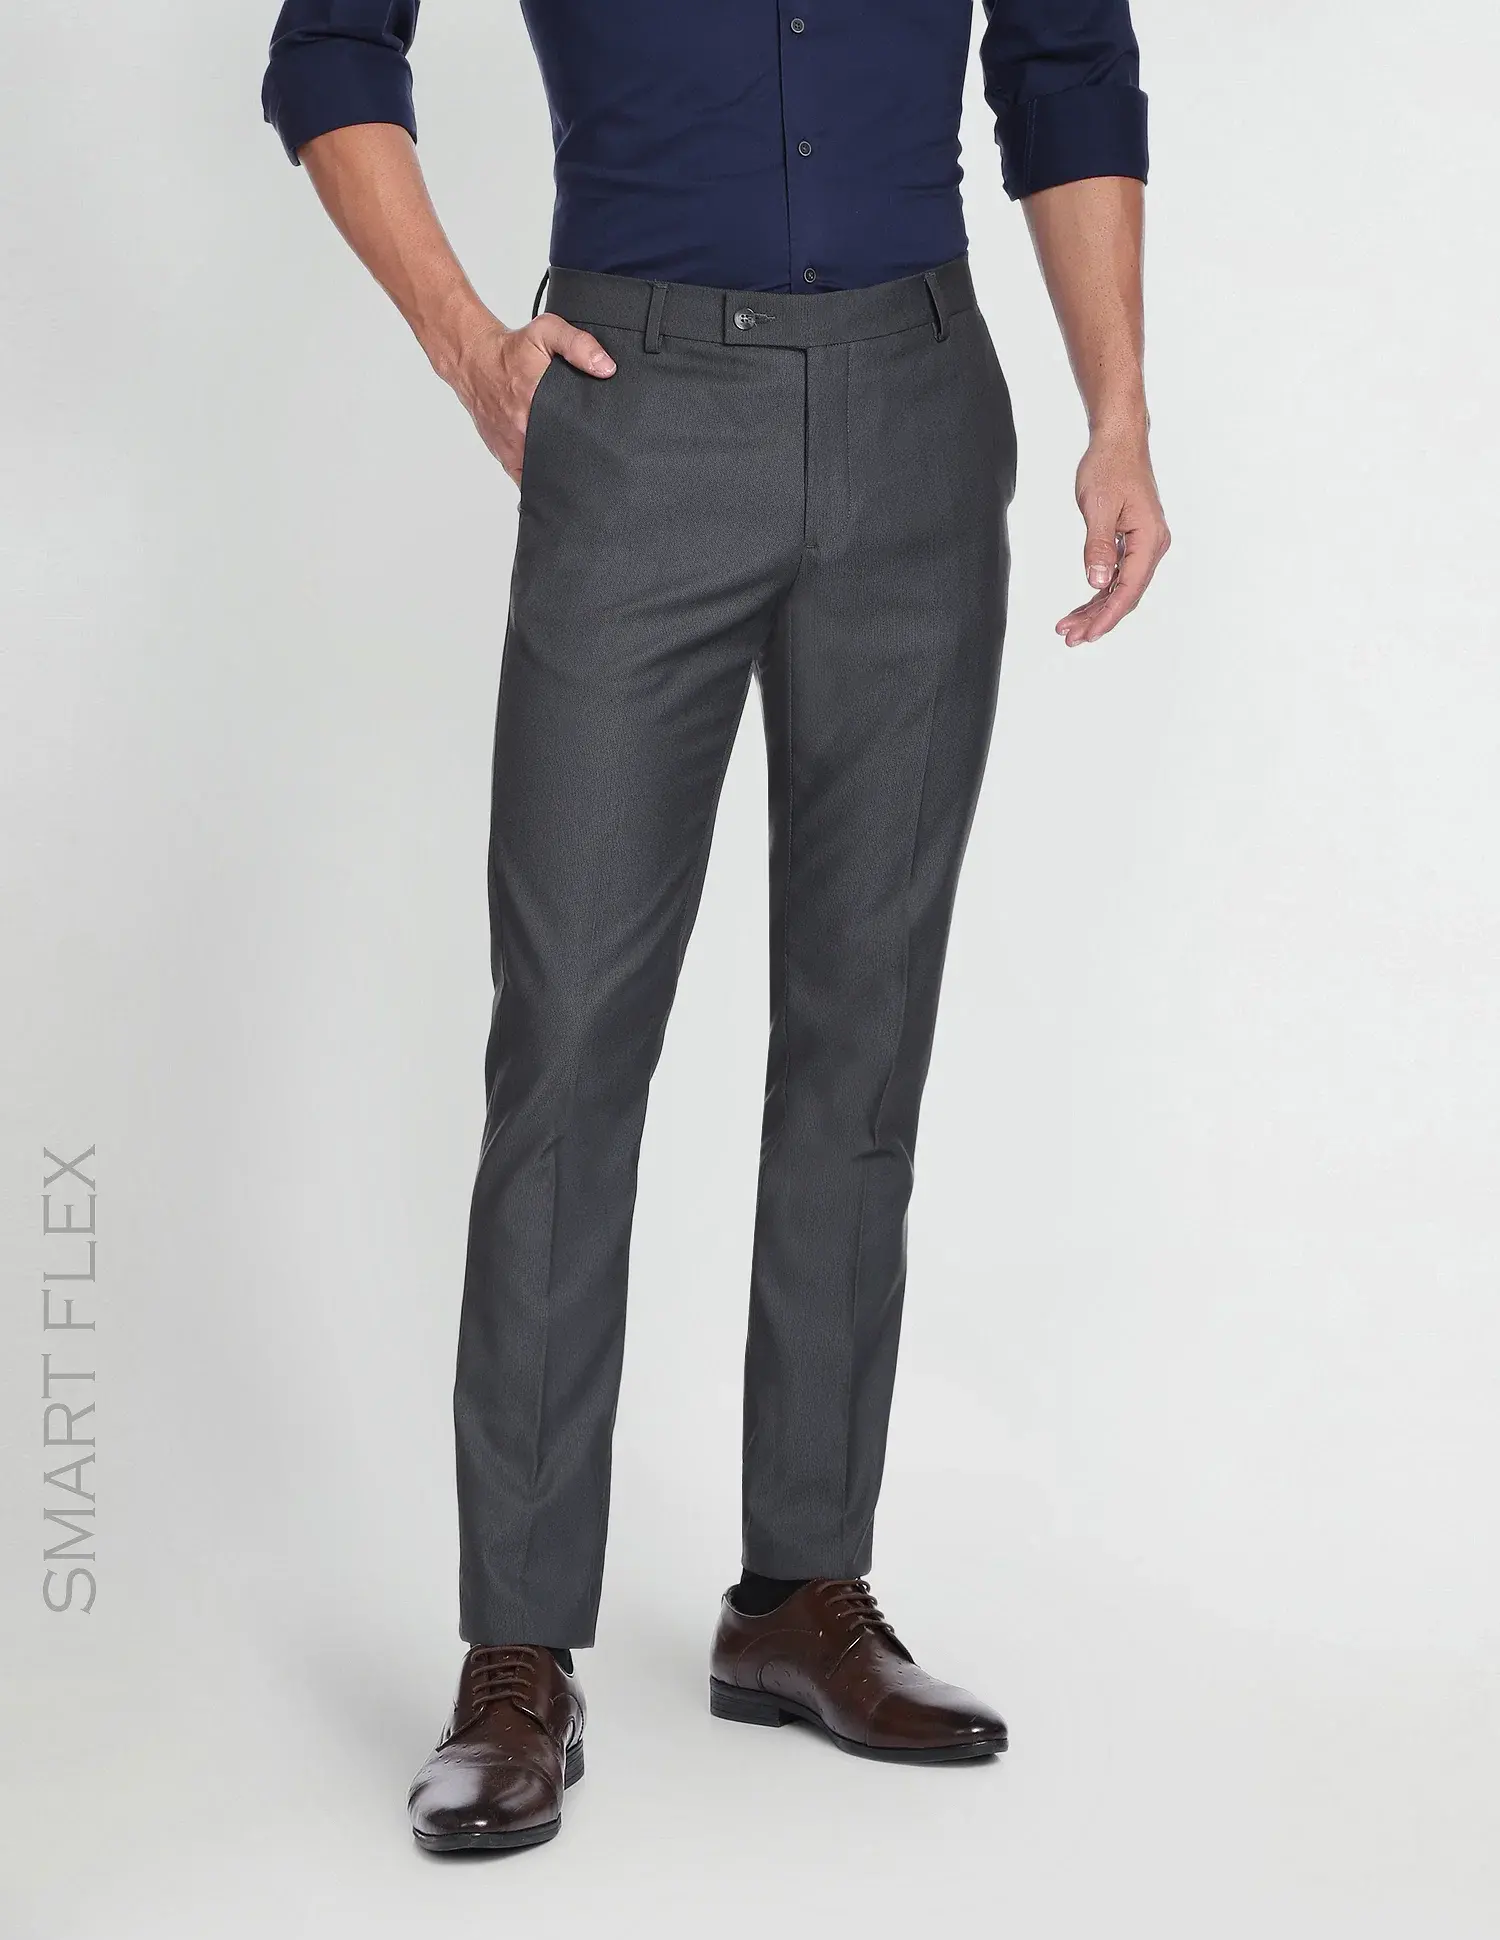 Dobby Smart Flex Formal Trouser